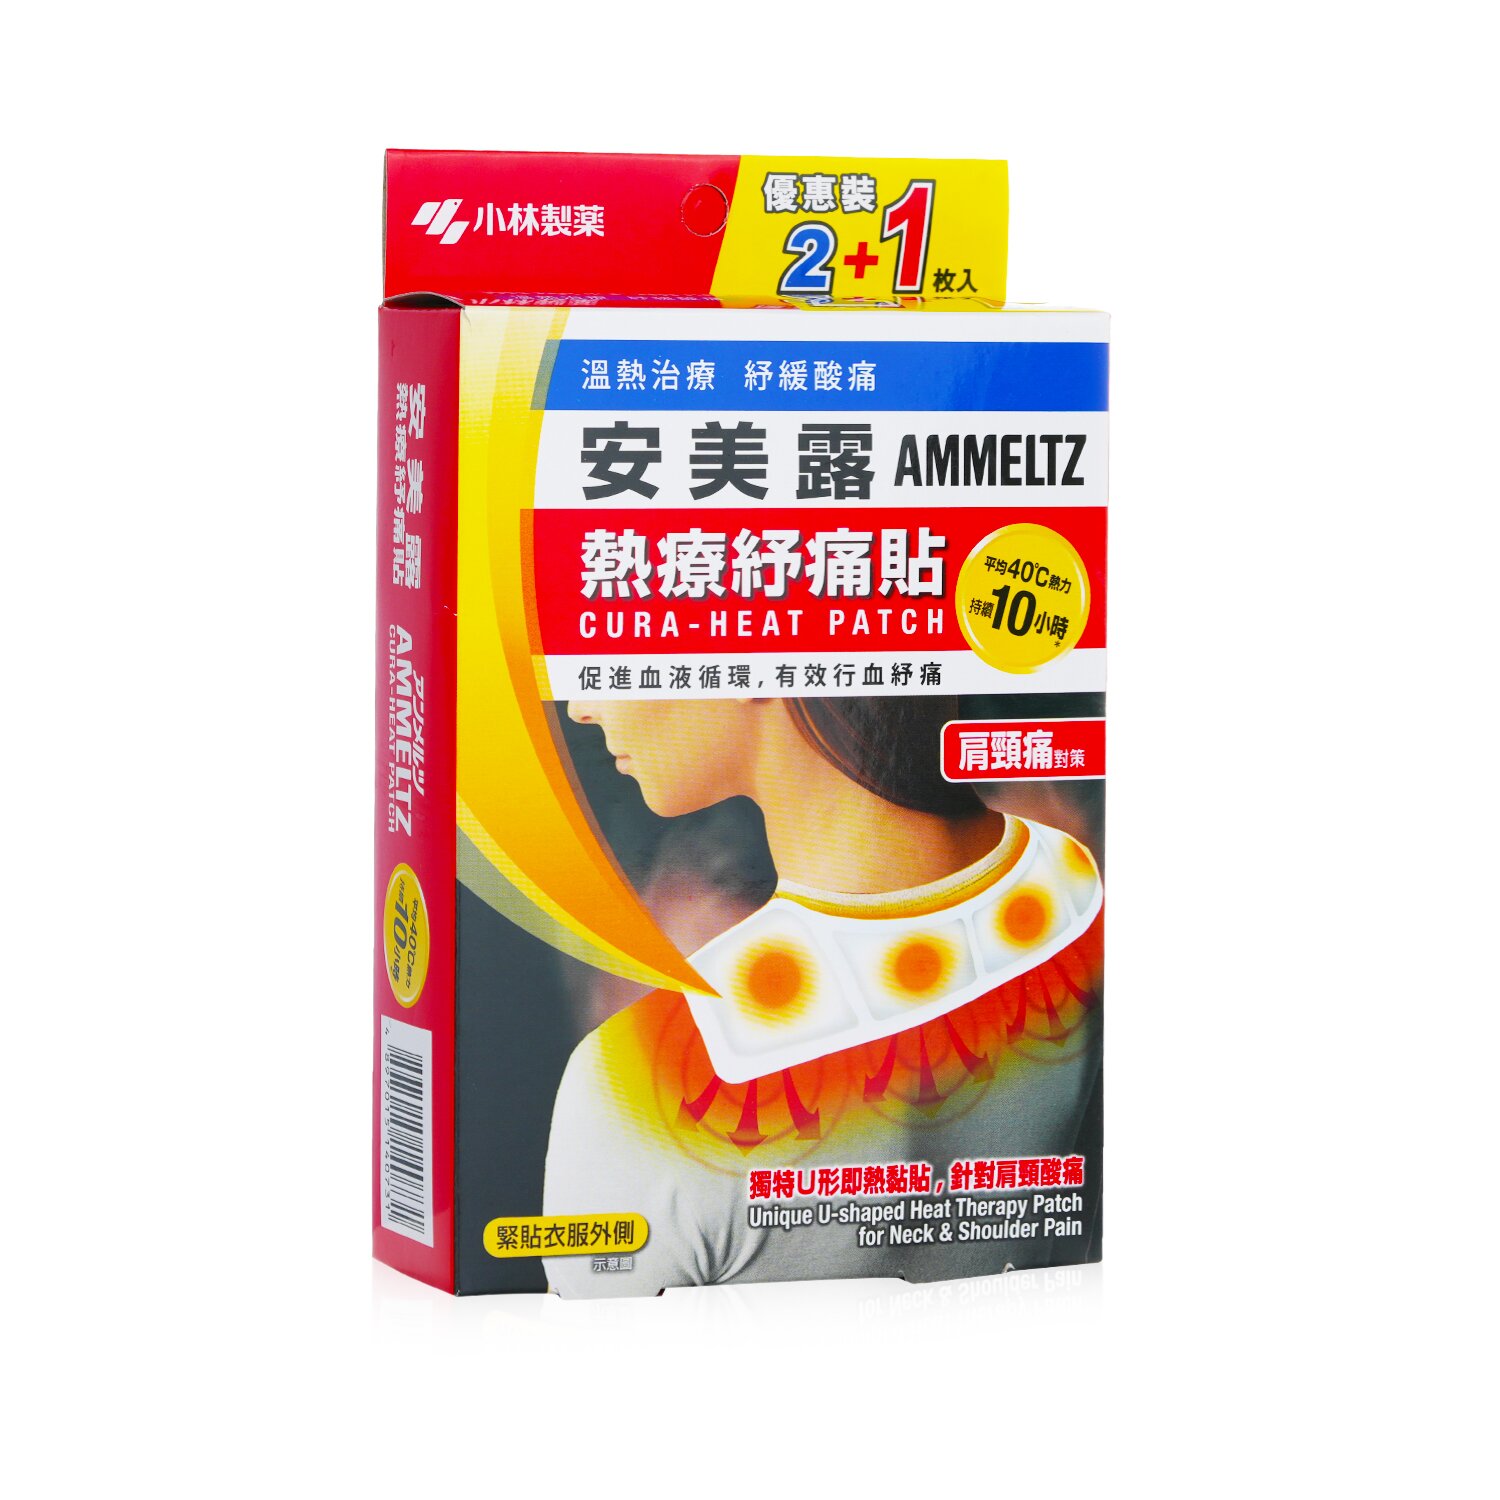 Kobayashi 암멜츠 큐라-열 패치 - 목과 어깨 통증을 위한 독특한 U자형 열치료 패치 3pcs